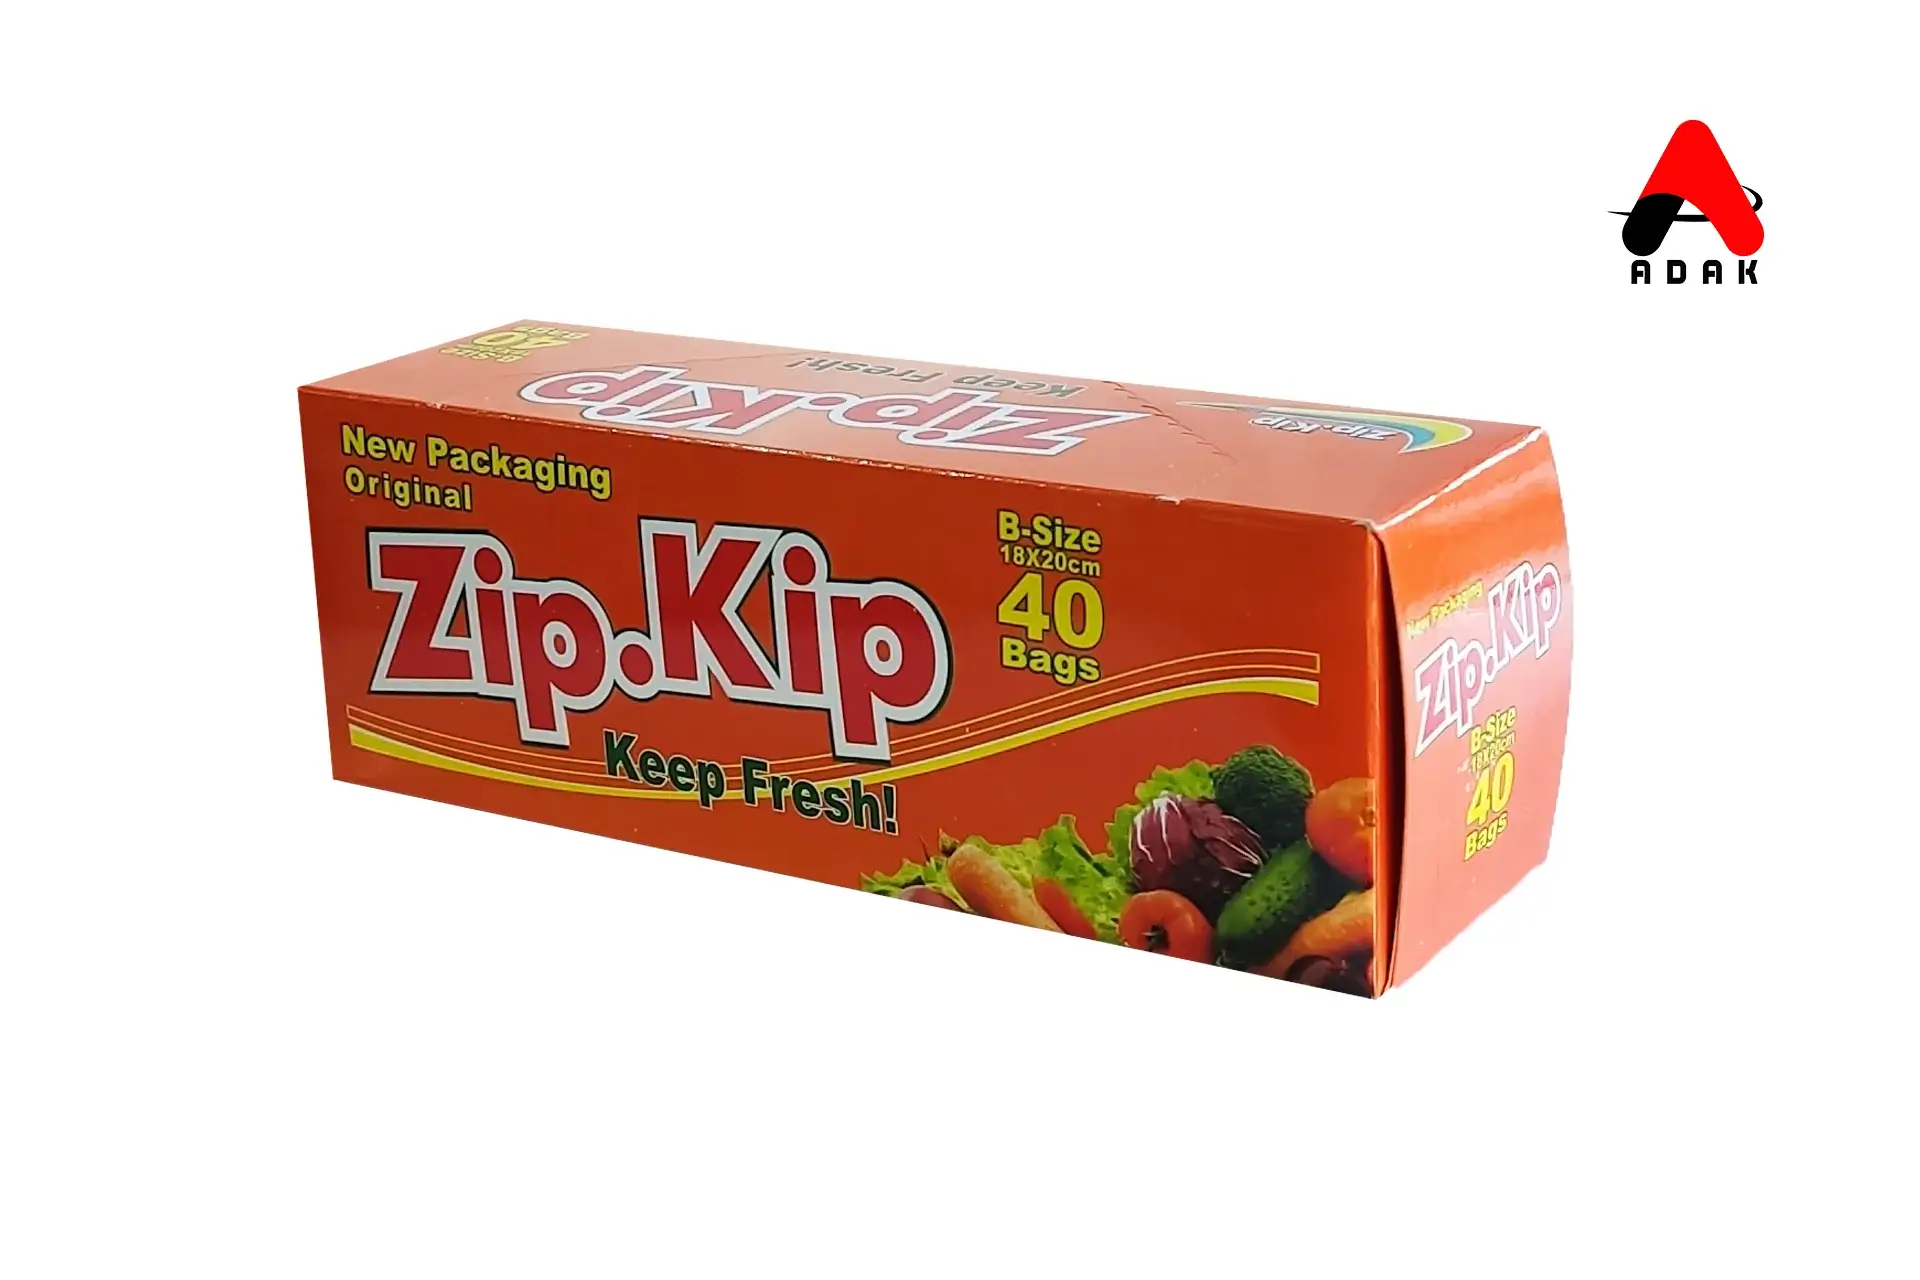 خرید زیپ کیپ با بهترین قیمت از آداک پک